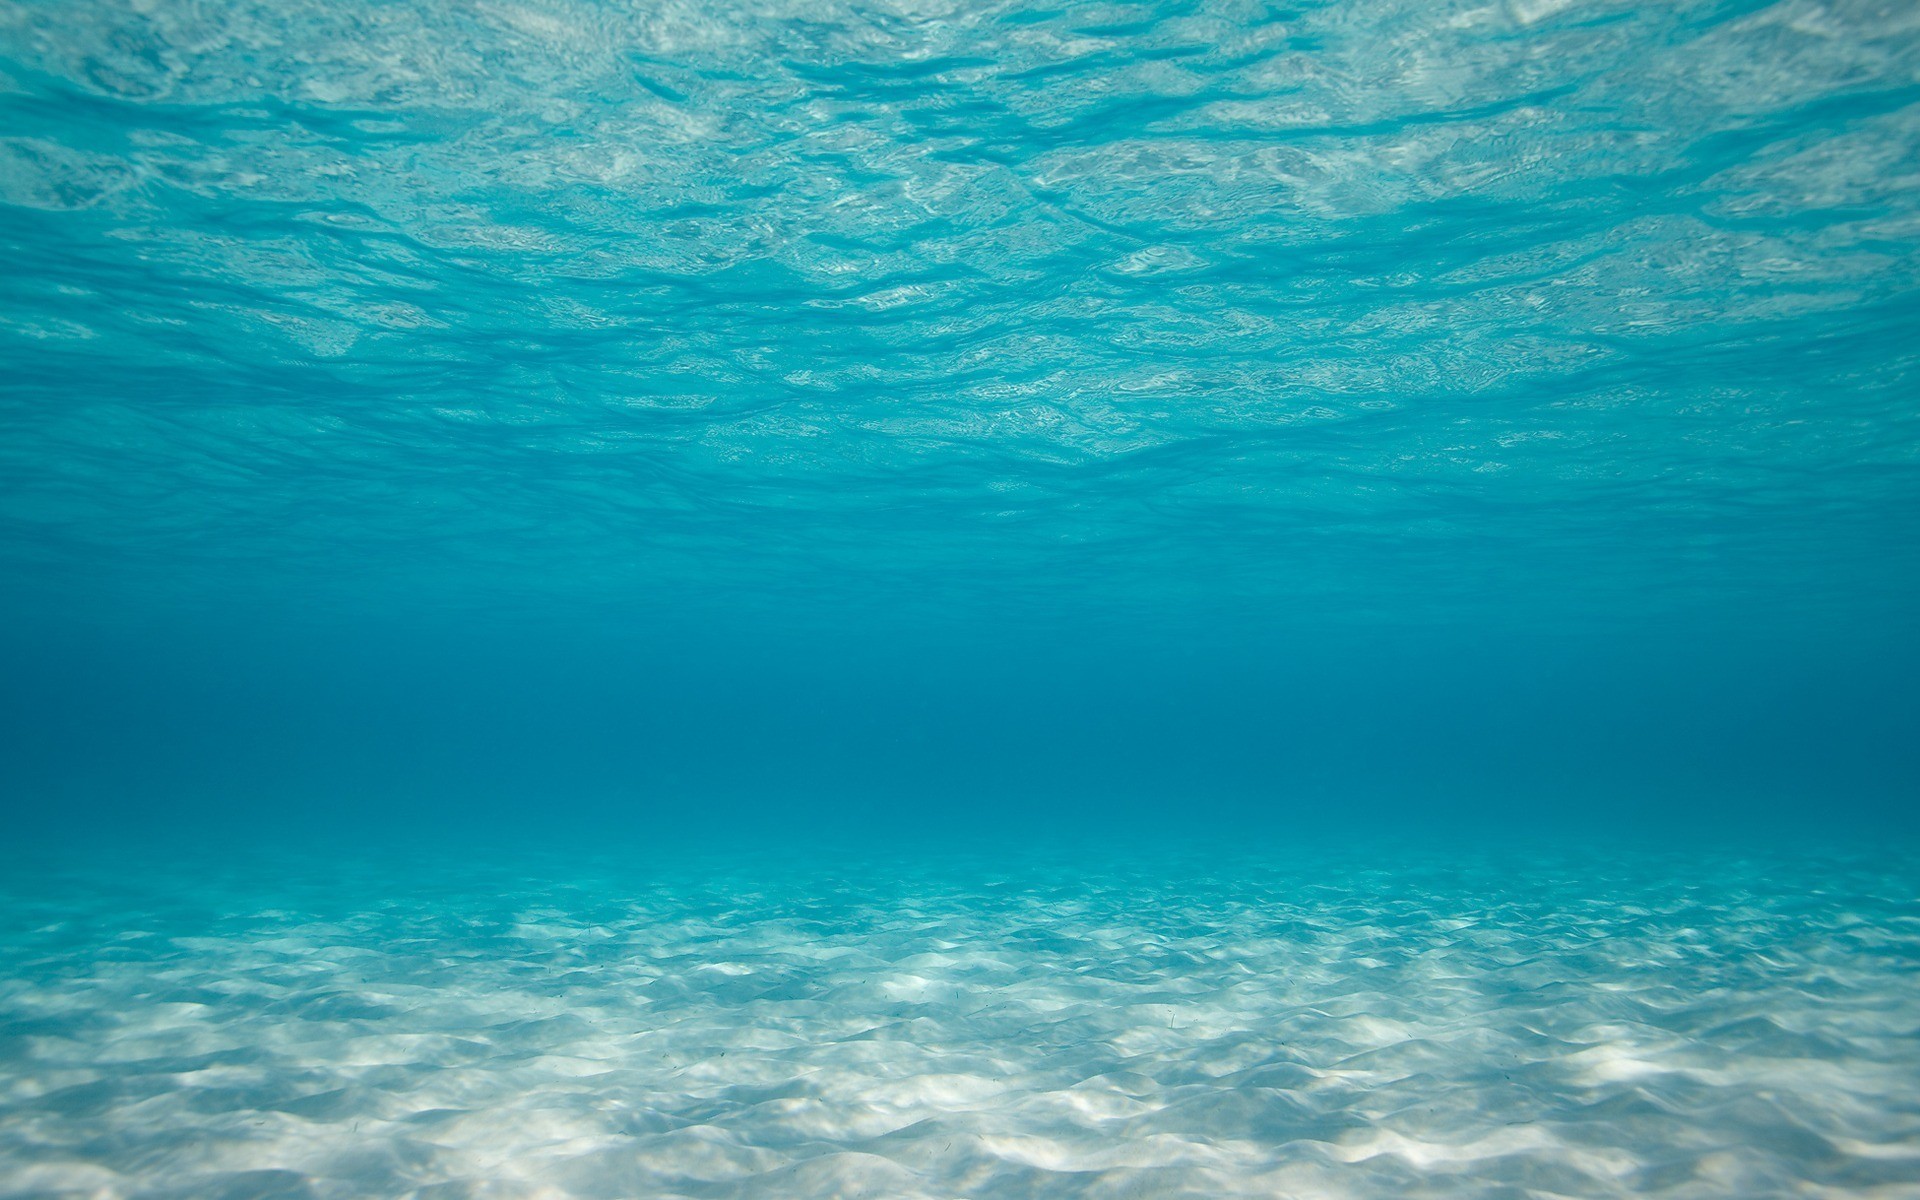 Cùng tải ngay bức tranh nền Sea Underwater Wallpaper - gợi nhớ đến sâu thẳm đại dương với những hình ảnh đầy màu sắc và sống động. Khám phá hơn về cuộc sống dưới đáy biển, trong đó những sinh vật đa dạng và kỳ diệu đang chờ đón bạn.